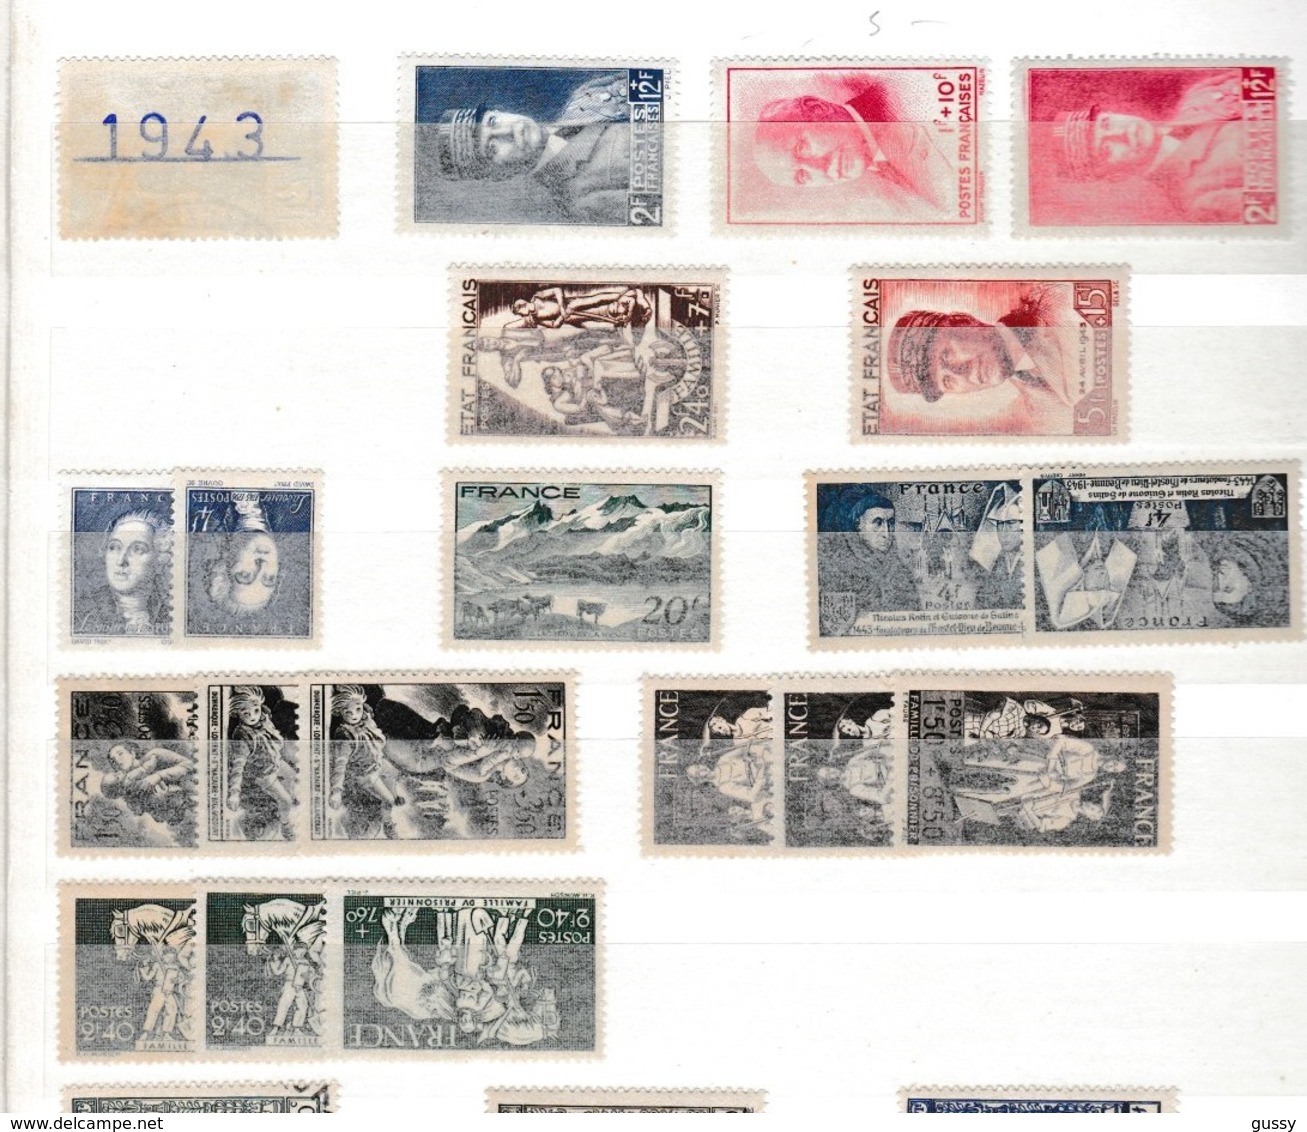 FRANCE 1941-1944:  Restes de Collection, lot de timbres neufs, petits prix